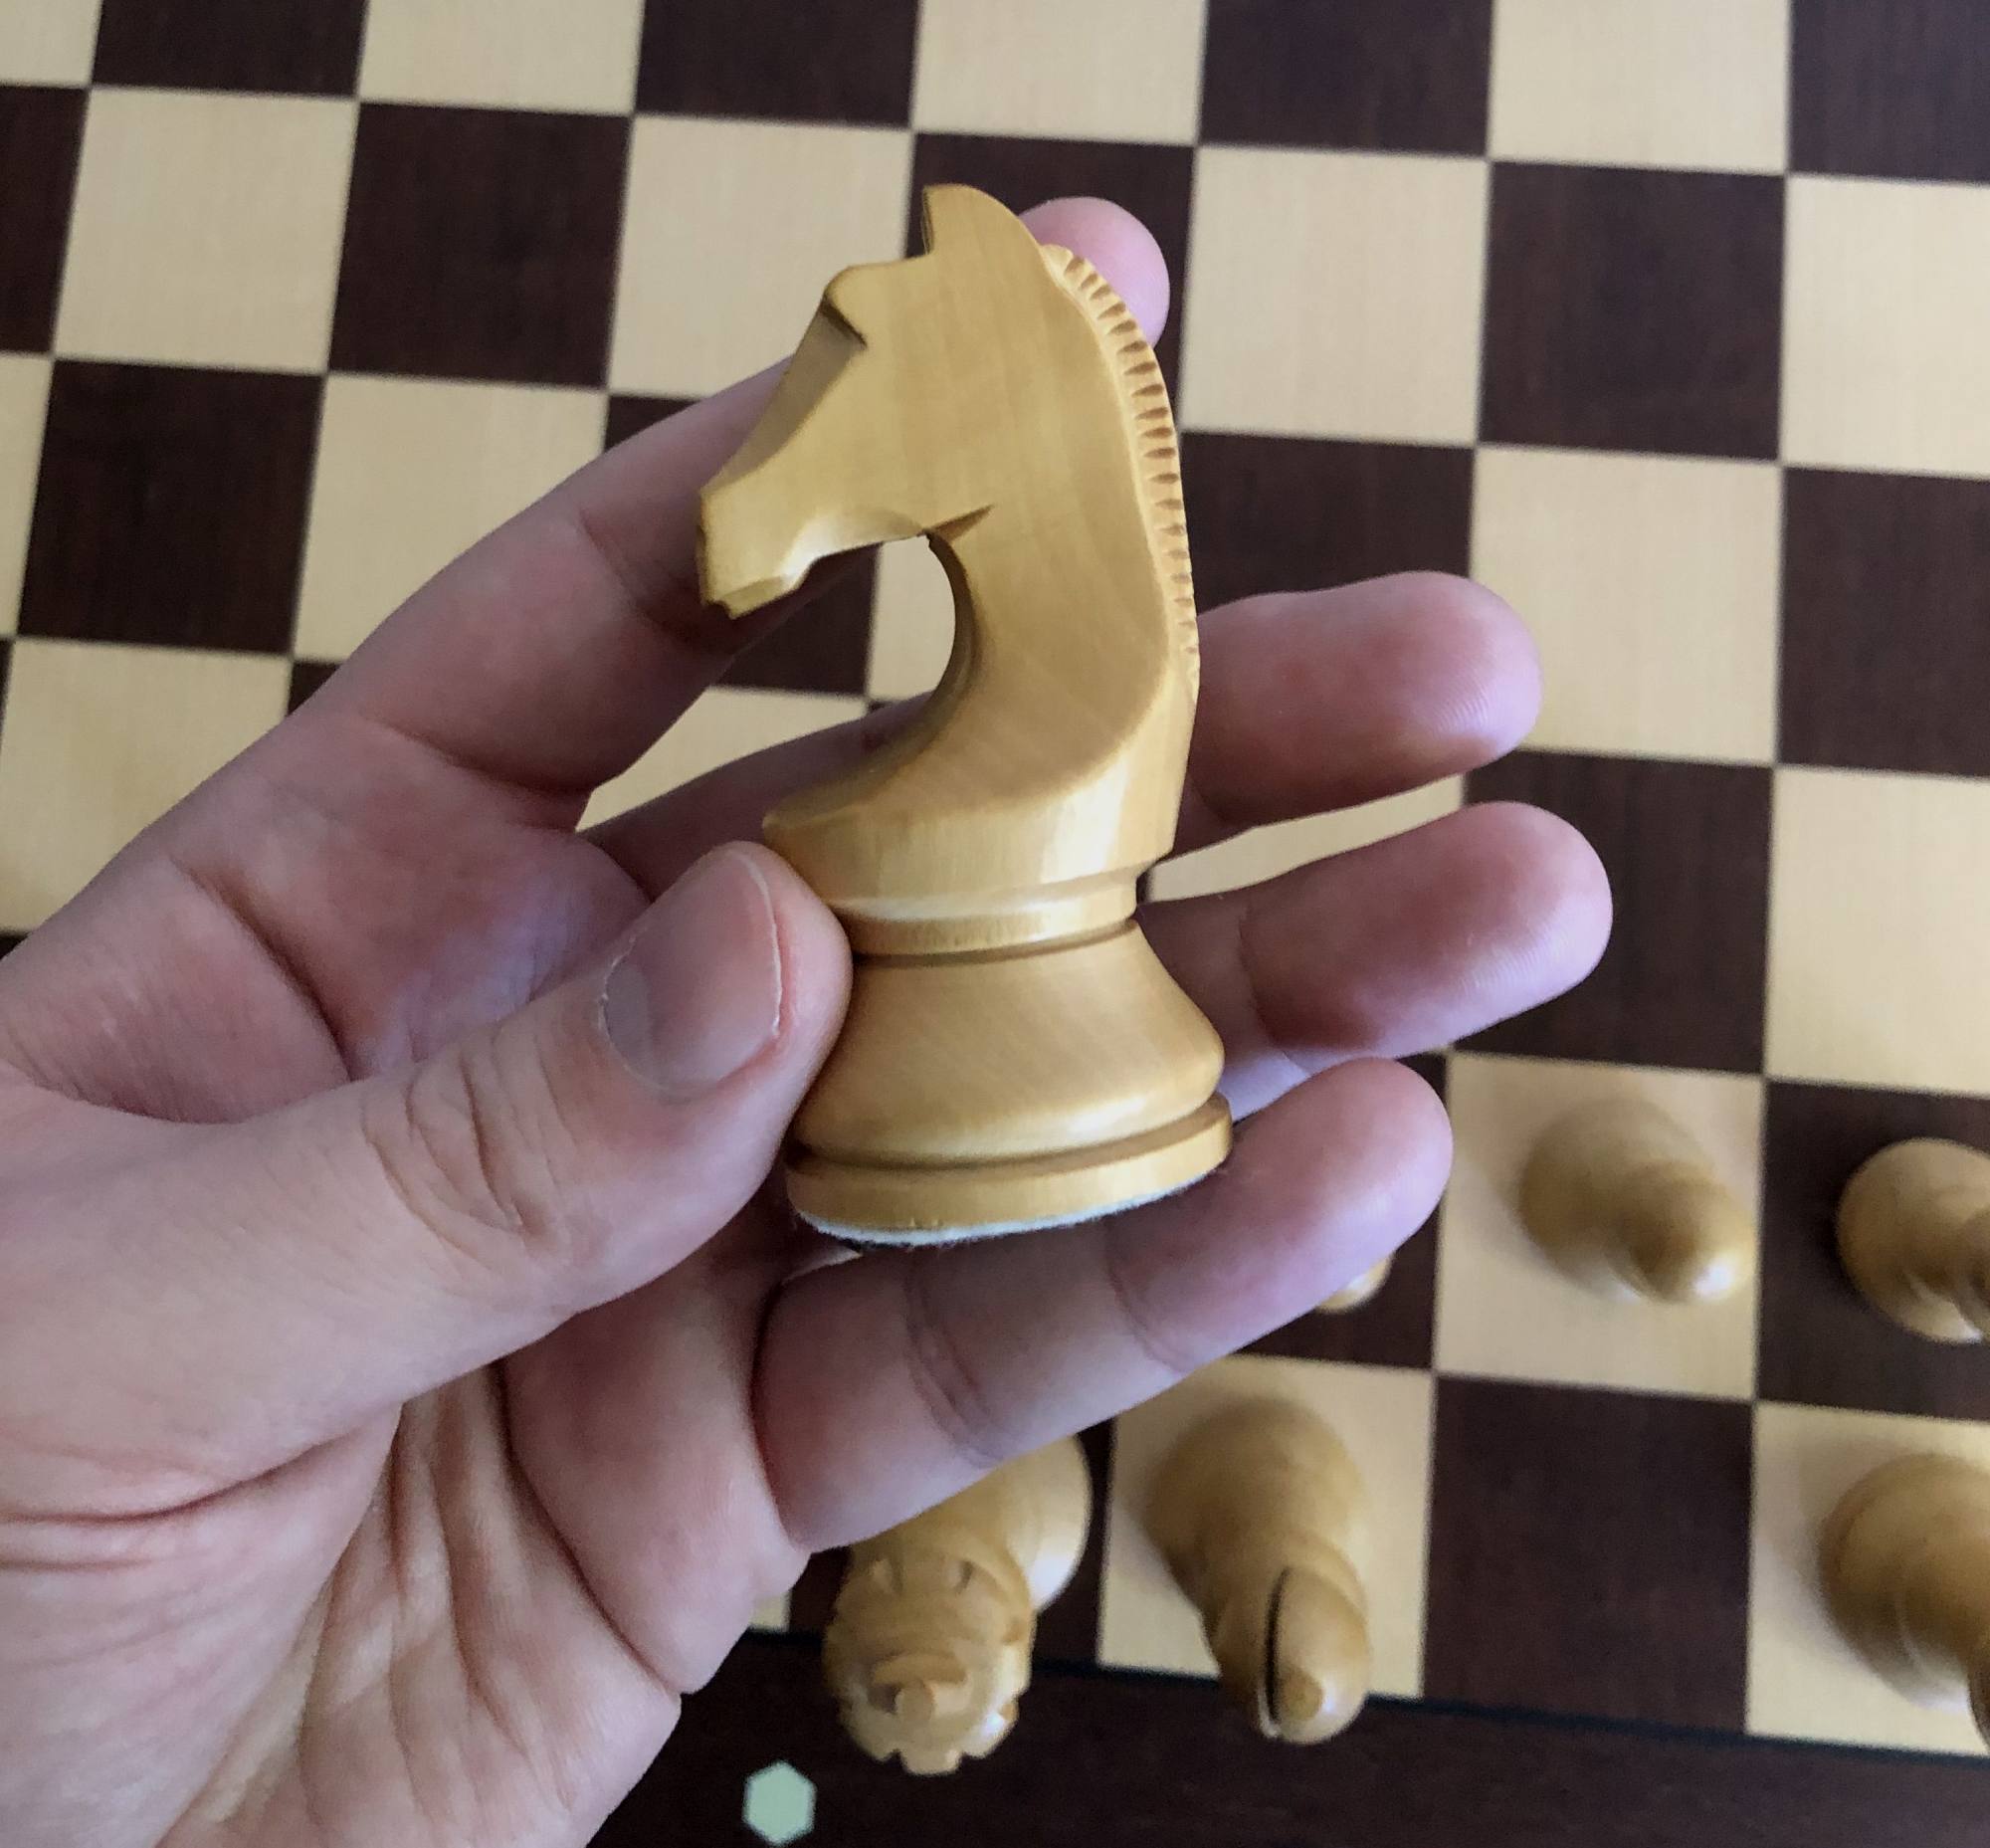 先说明这个棋子不是东方设计。这是目前国际棋联冠军赛专用棋子中的马。与剧集中的马有类似的设计语言